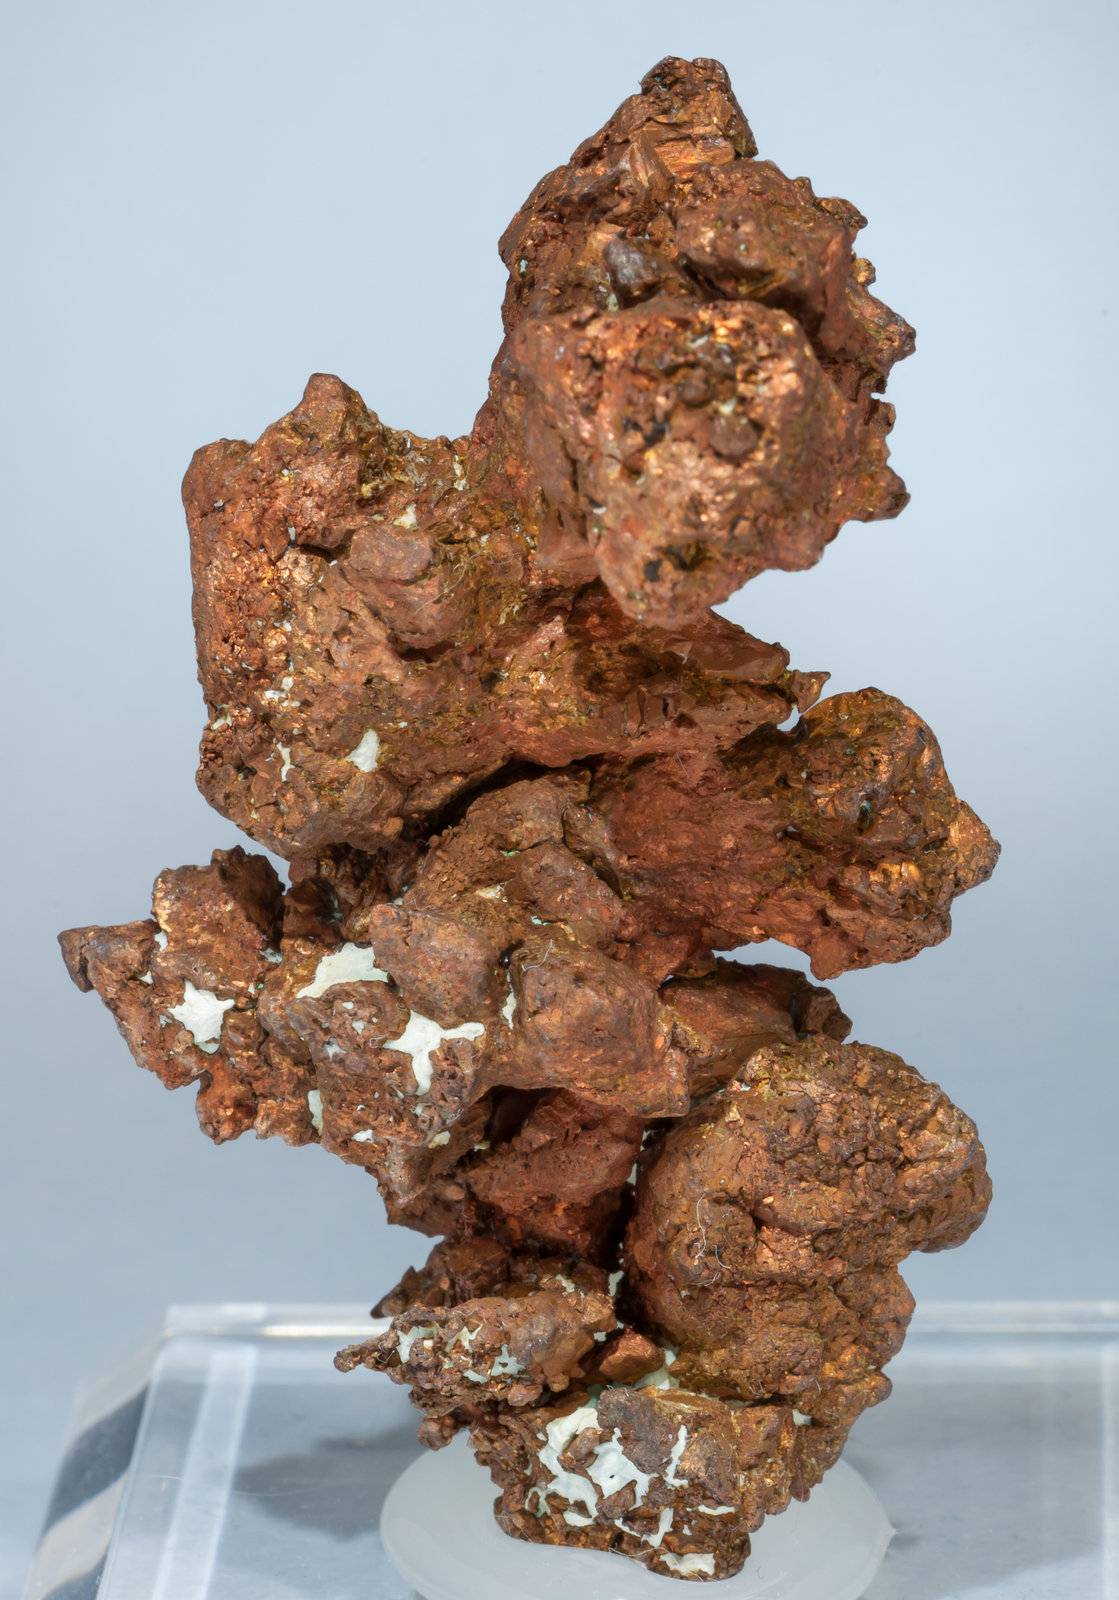 specimens/s_imagesAE8/Copper-TA76AE8f.jpg